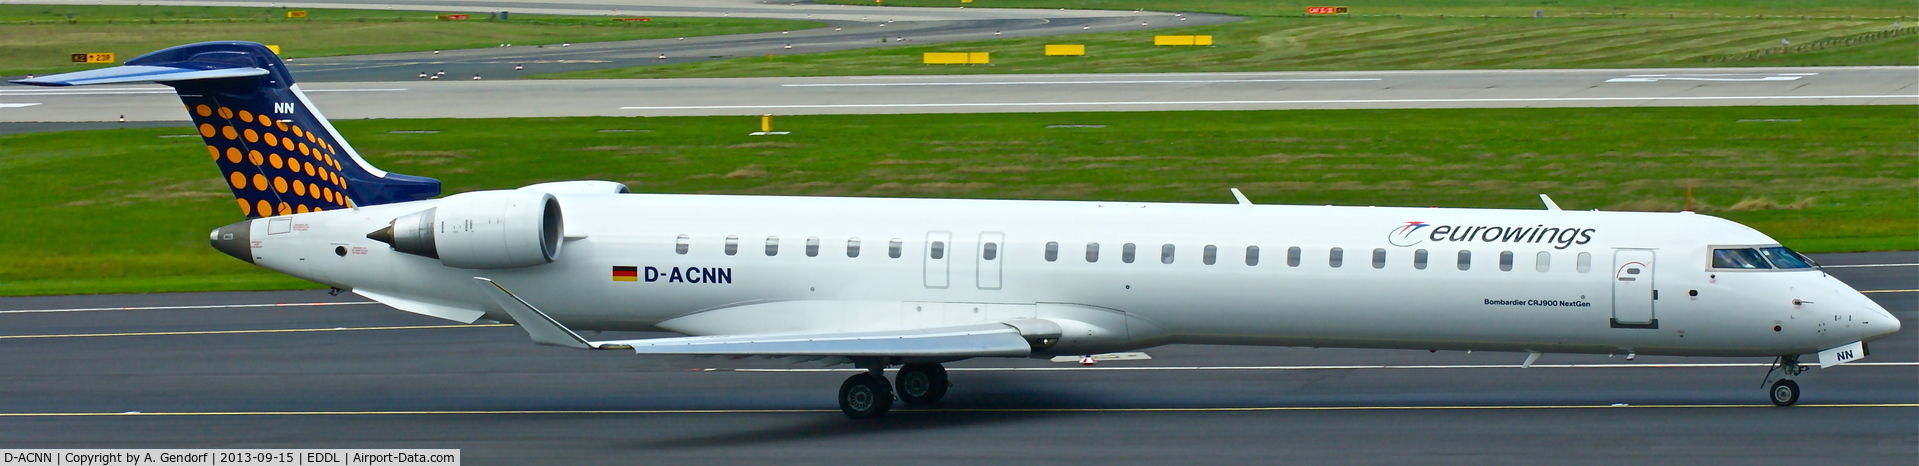 D-ACNN, 2010 Bombardier CRJ-900LR (CL-600-2D24) C/N 15254, Eurowings (LH-Regional cs.), is here on taxiway 